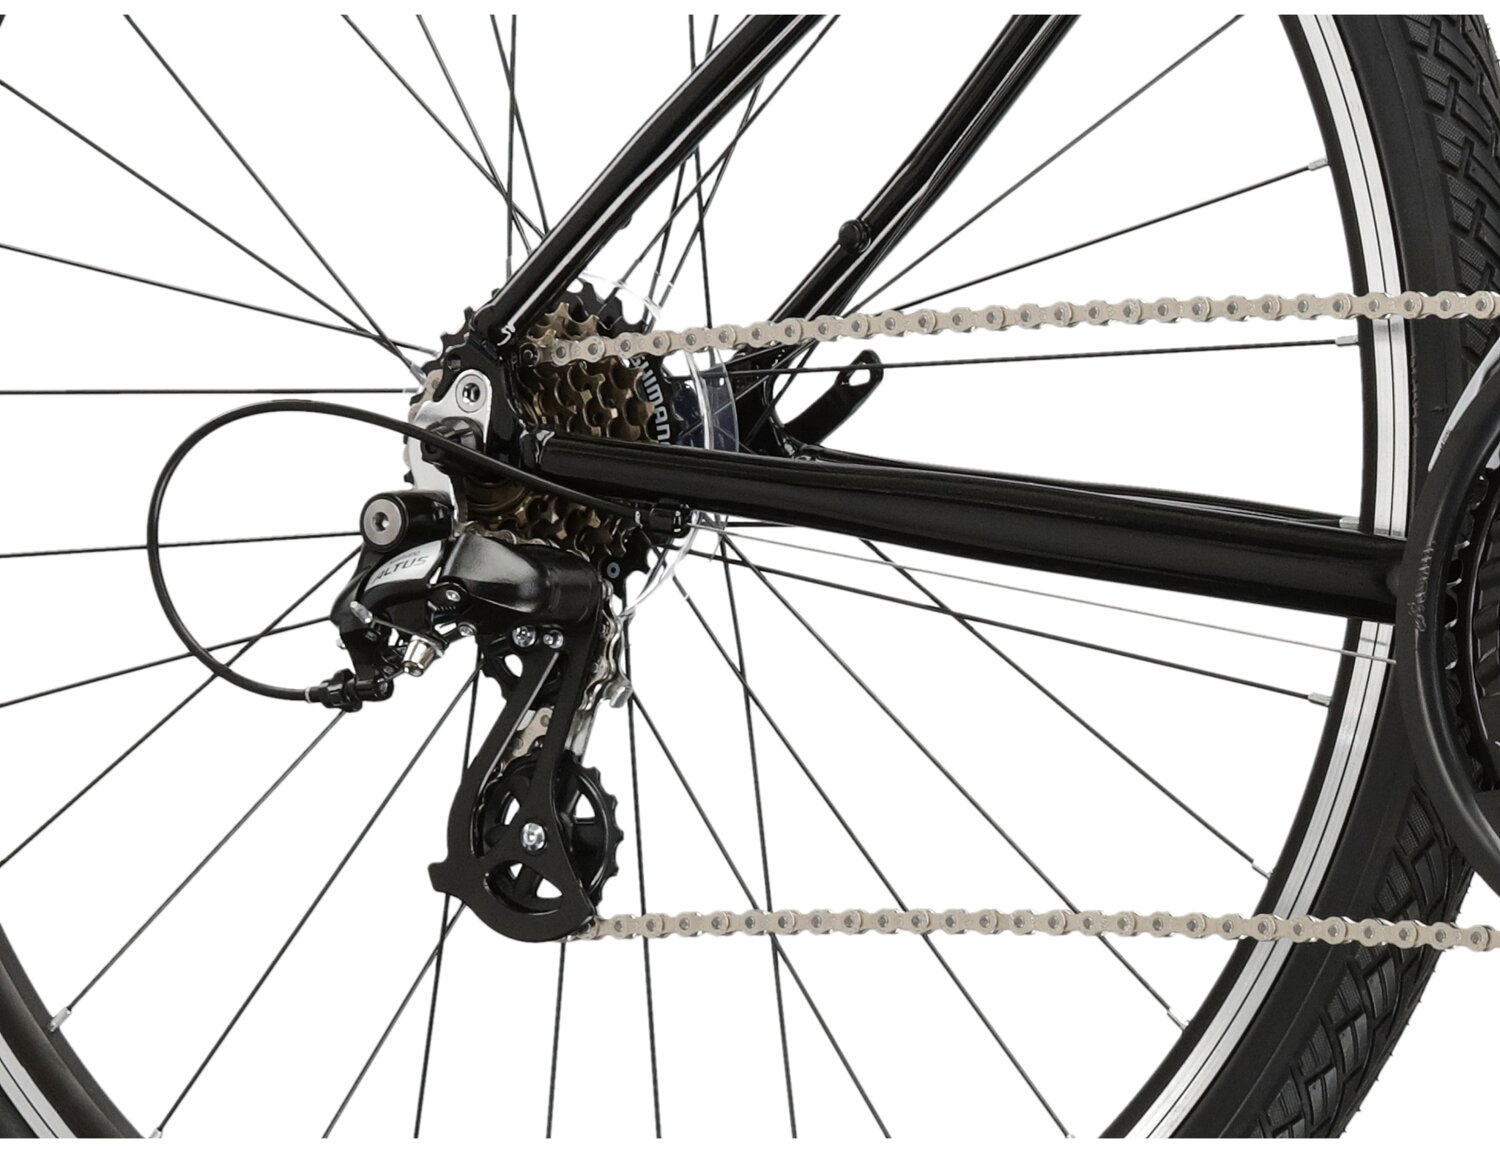  Tylna siedmiobiegowa przerzutka Shimano Altus M310 oraz hamulce v-brake w rowerze crossowym KROSS Evado 2.0 